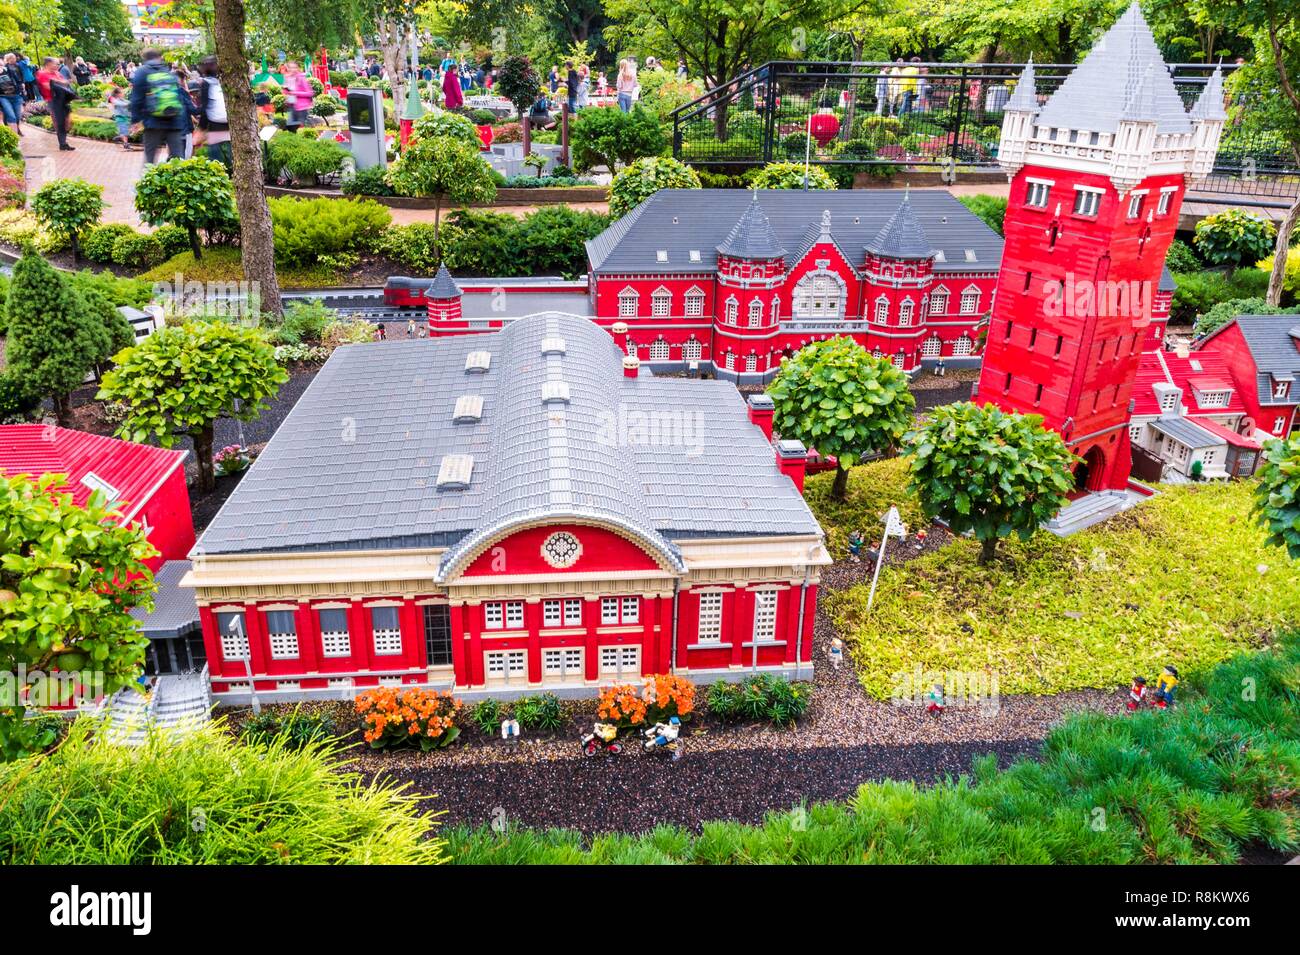 Danimarca, nello Jutland, Billund, LEGOLAND® Billund è il primo parco  Legoland fondata nel 1968, vicino alla sede della LEGO® Azienda (il termine  Lego è derivata dalla gamba danese godt significato gioca bene),